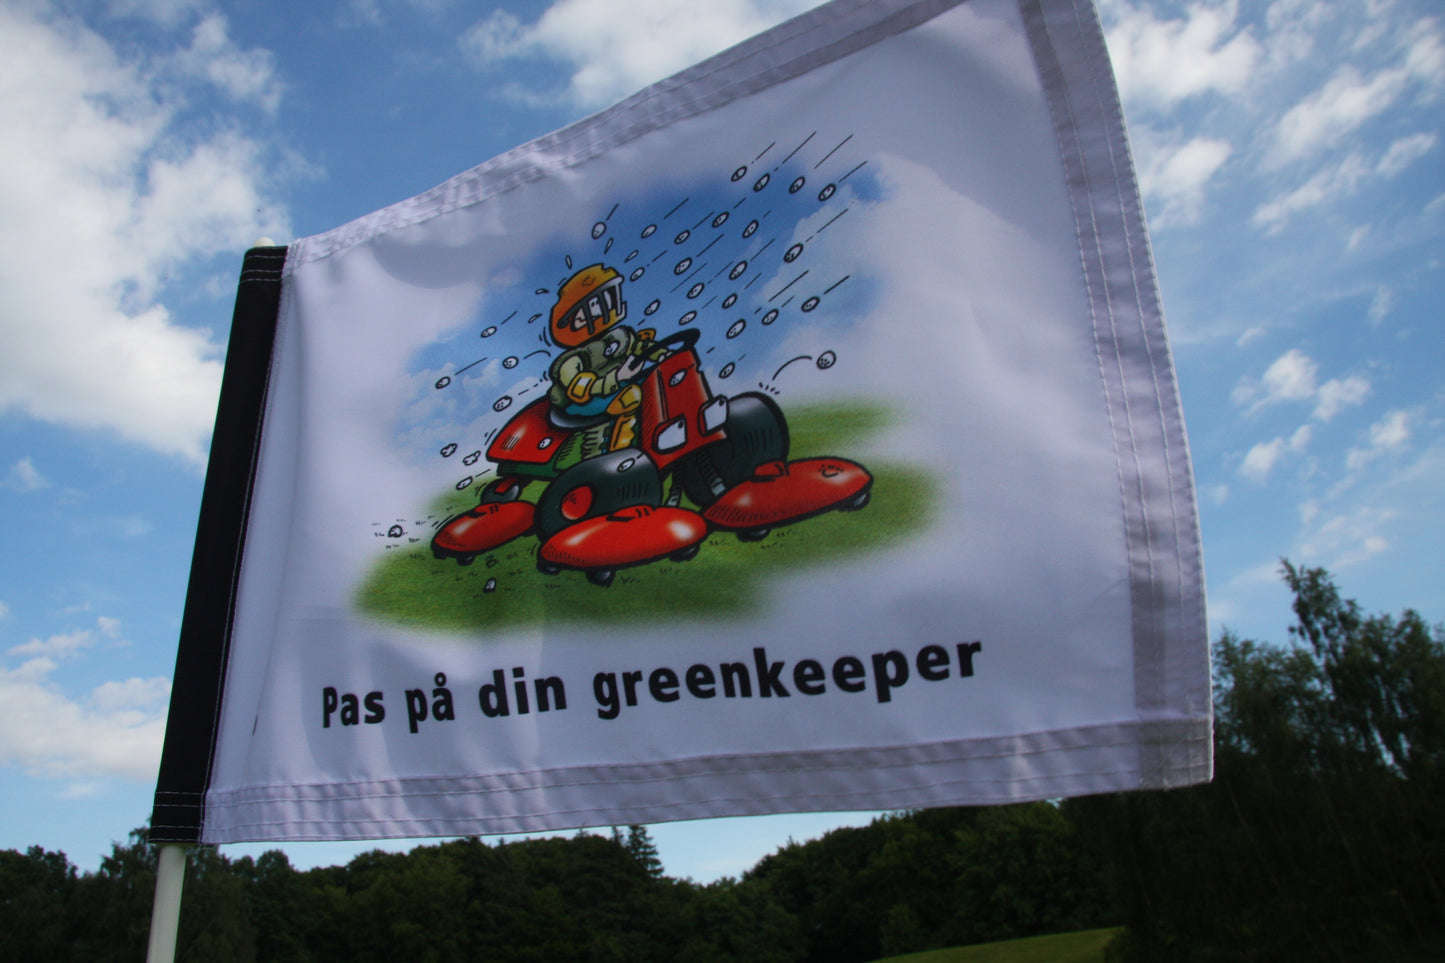 Advarselsflag ”Pas på din greenkeeper”, 200 gram flagdug